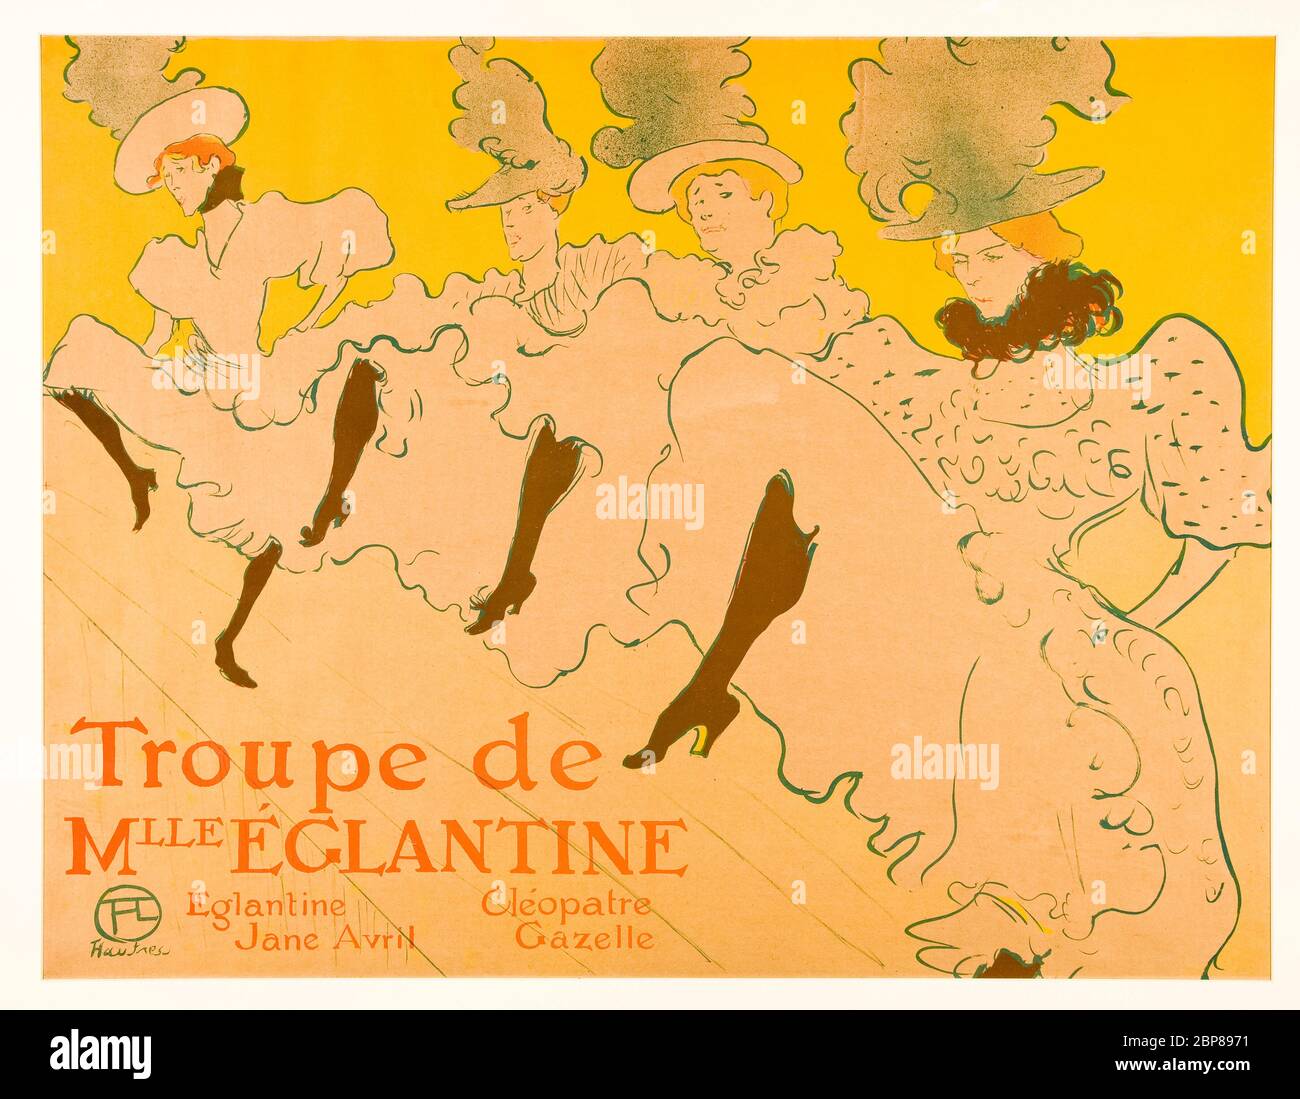 Henri de Toulouse-Lautrec, La Troupe de Mademoiselle Eglantine: (Mademoiselle Eglantine’s Troupe), can-can dancers, poster, 1896 Stock Photo